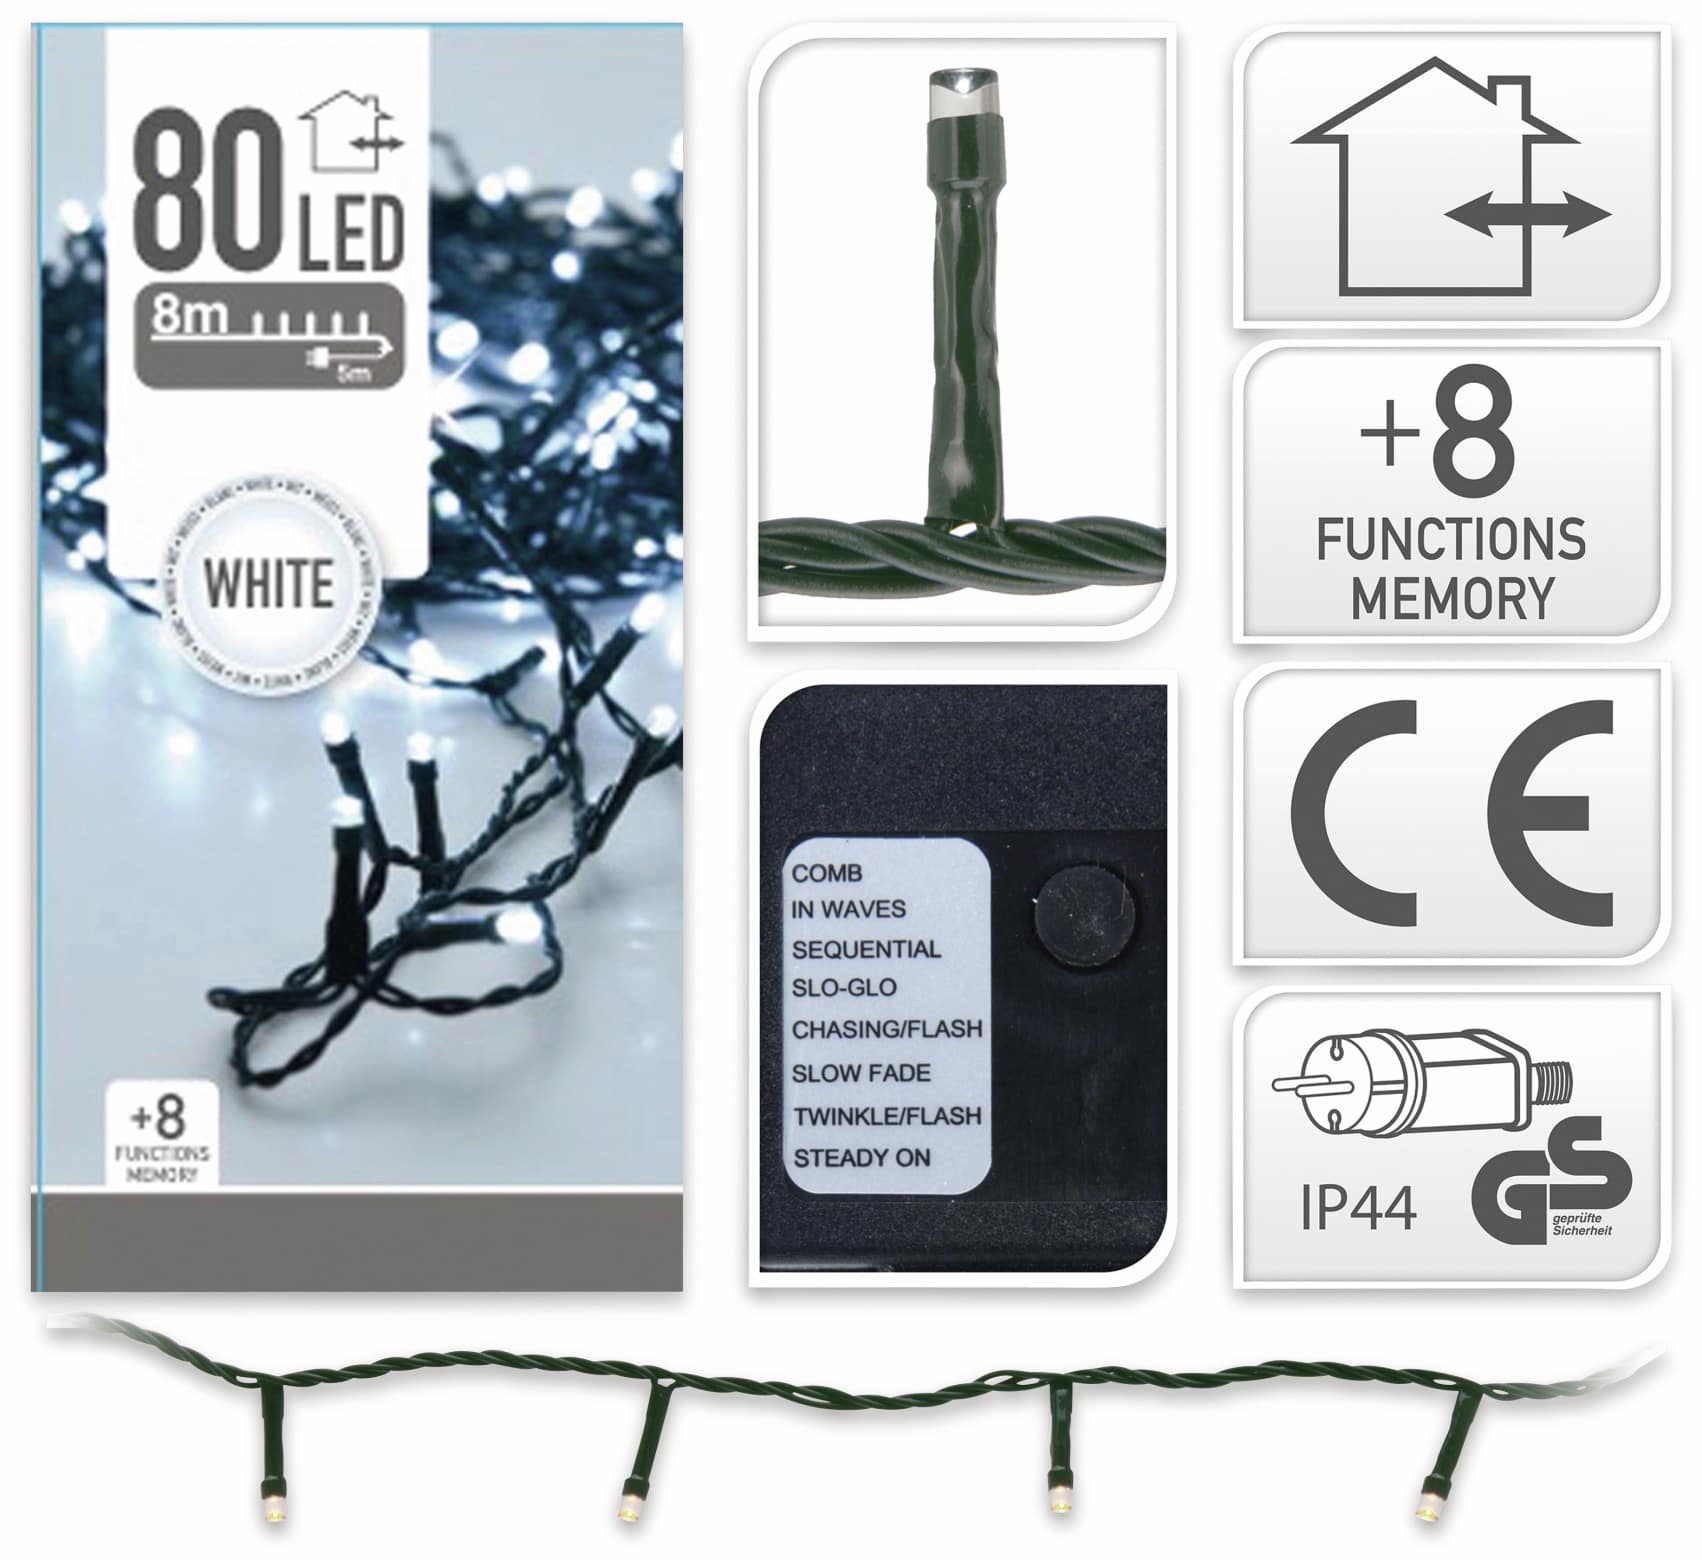 LED-Lichterkette, 80 LEDs, kaltweiß, 230V~, IP44, 8 Funktionen, Memory